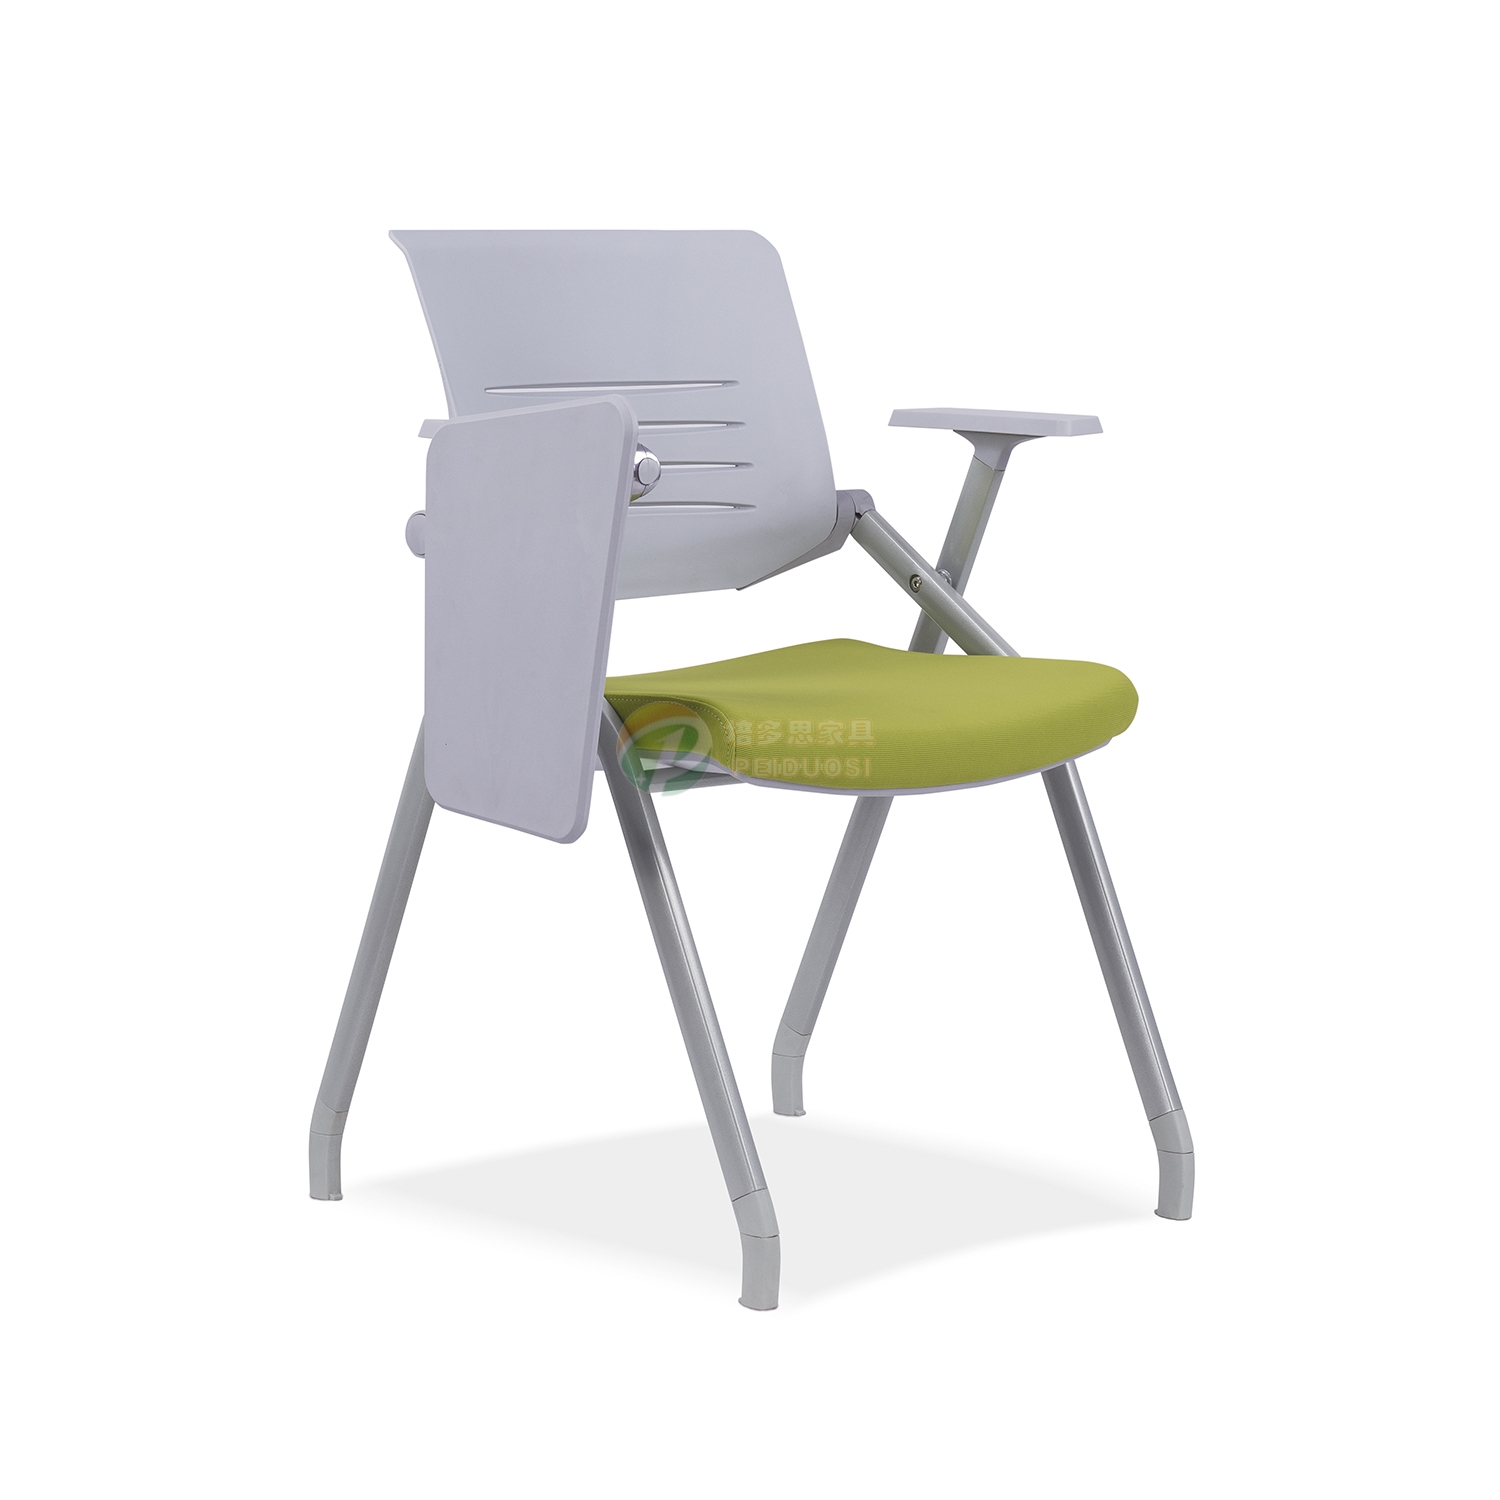 O型折叠椅 彩色折叠椅 红折展会叠椅 白色塑料折叠凳 便携折叠椅-阿里巴巴